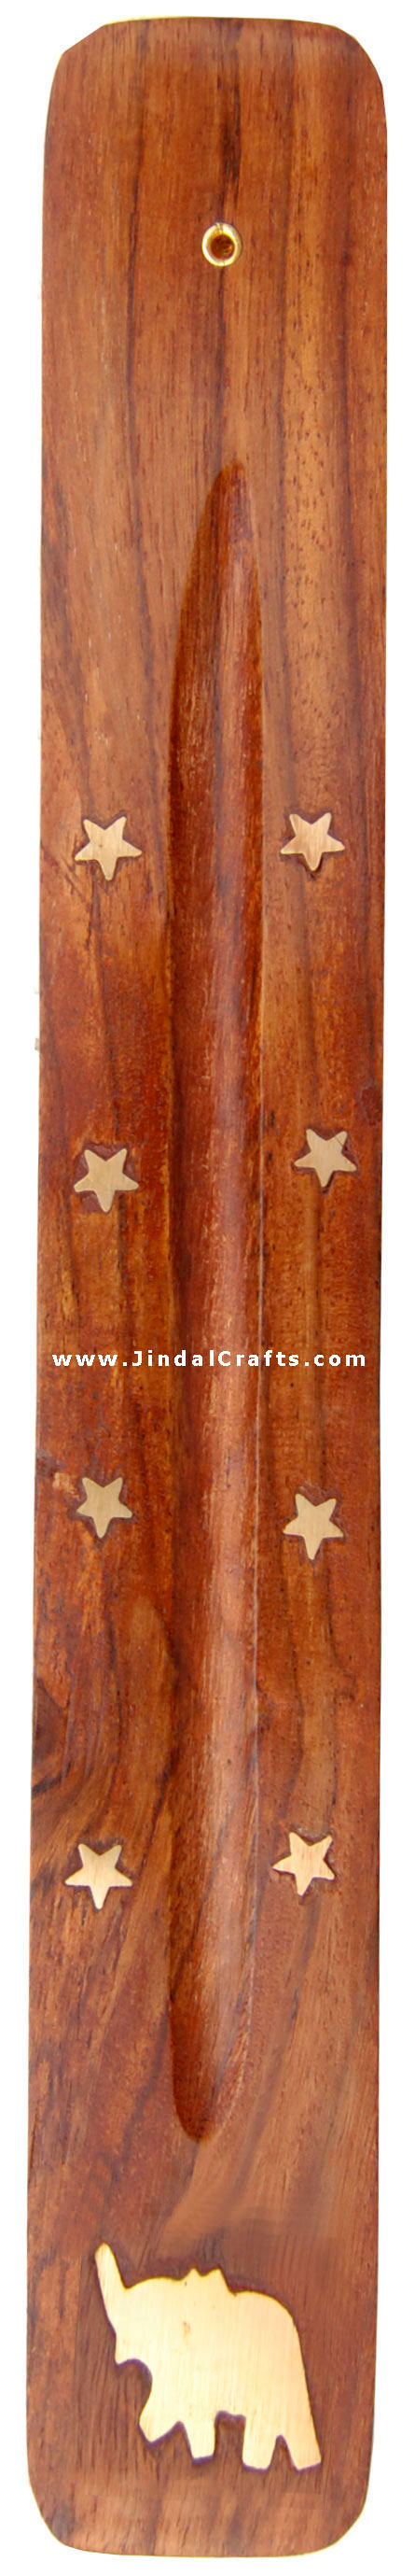 Incense Holder - Hand Carved Wooden Indian Art